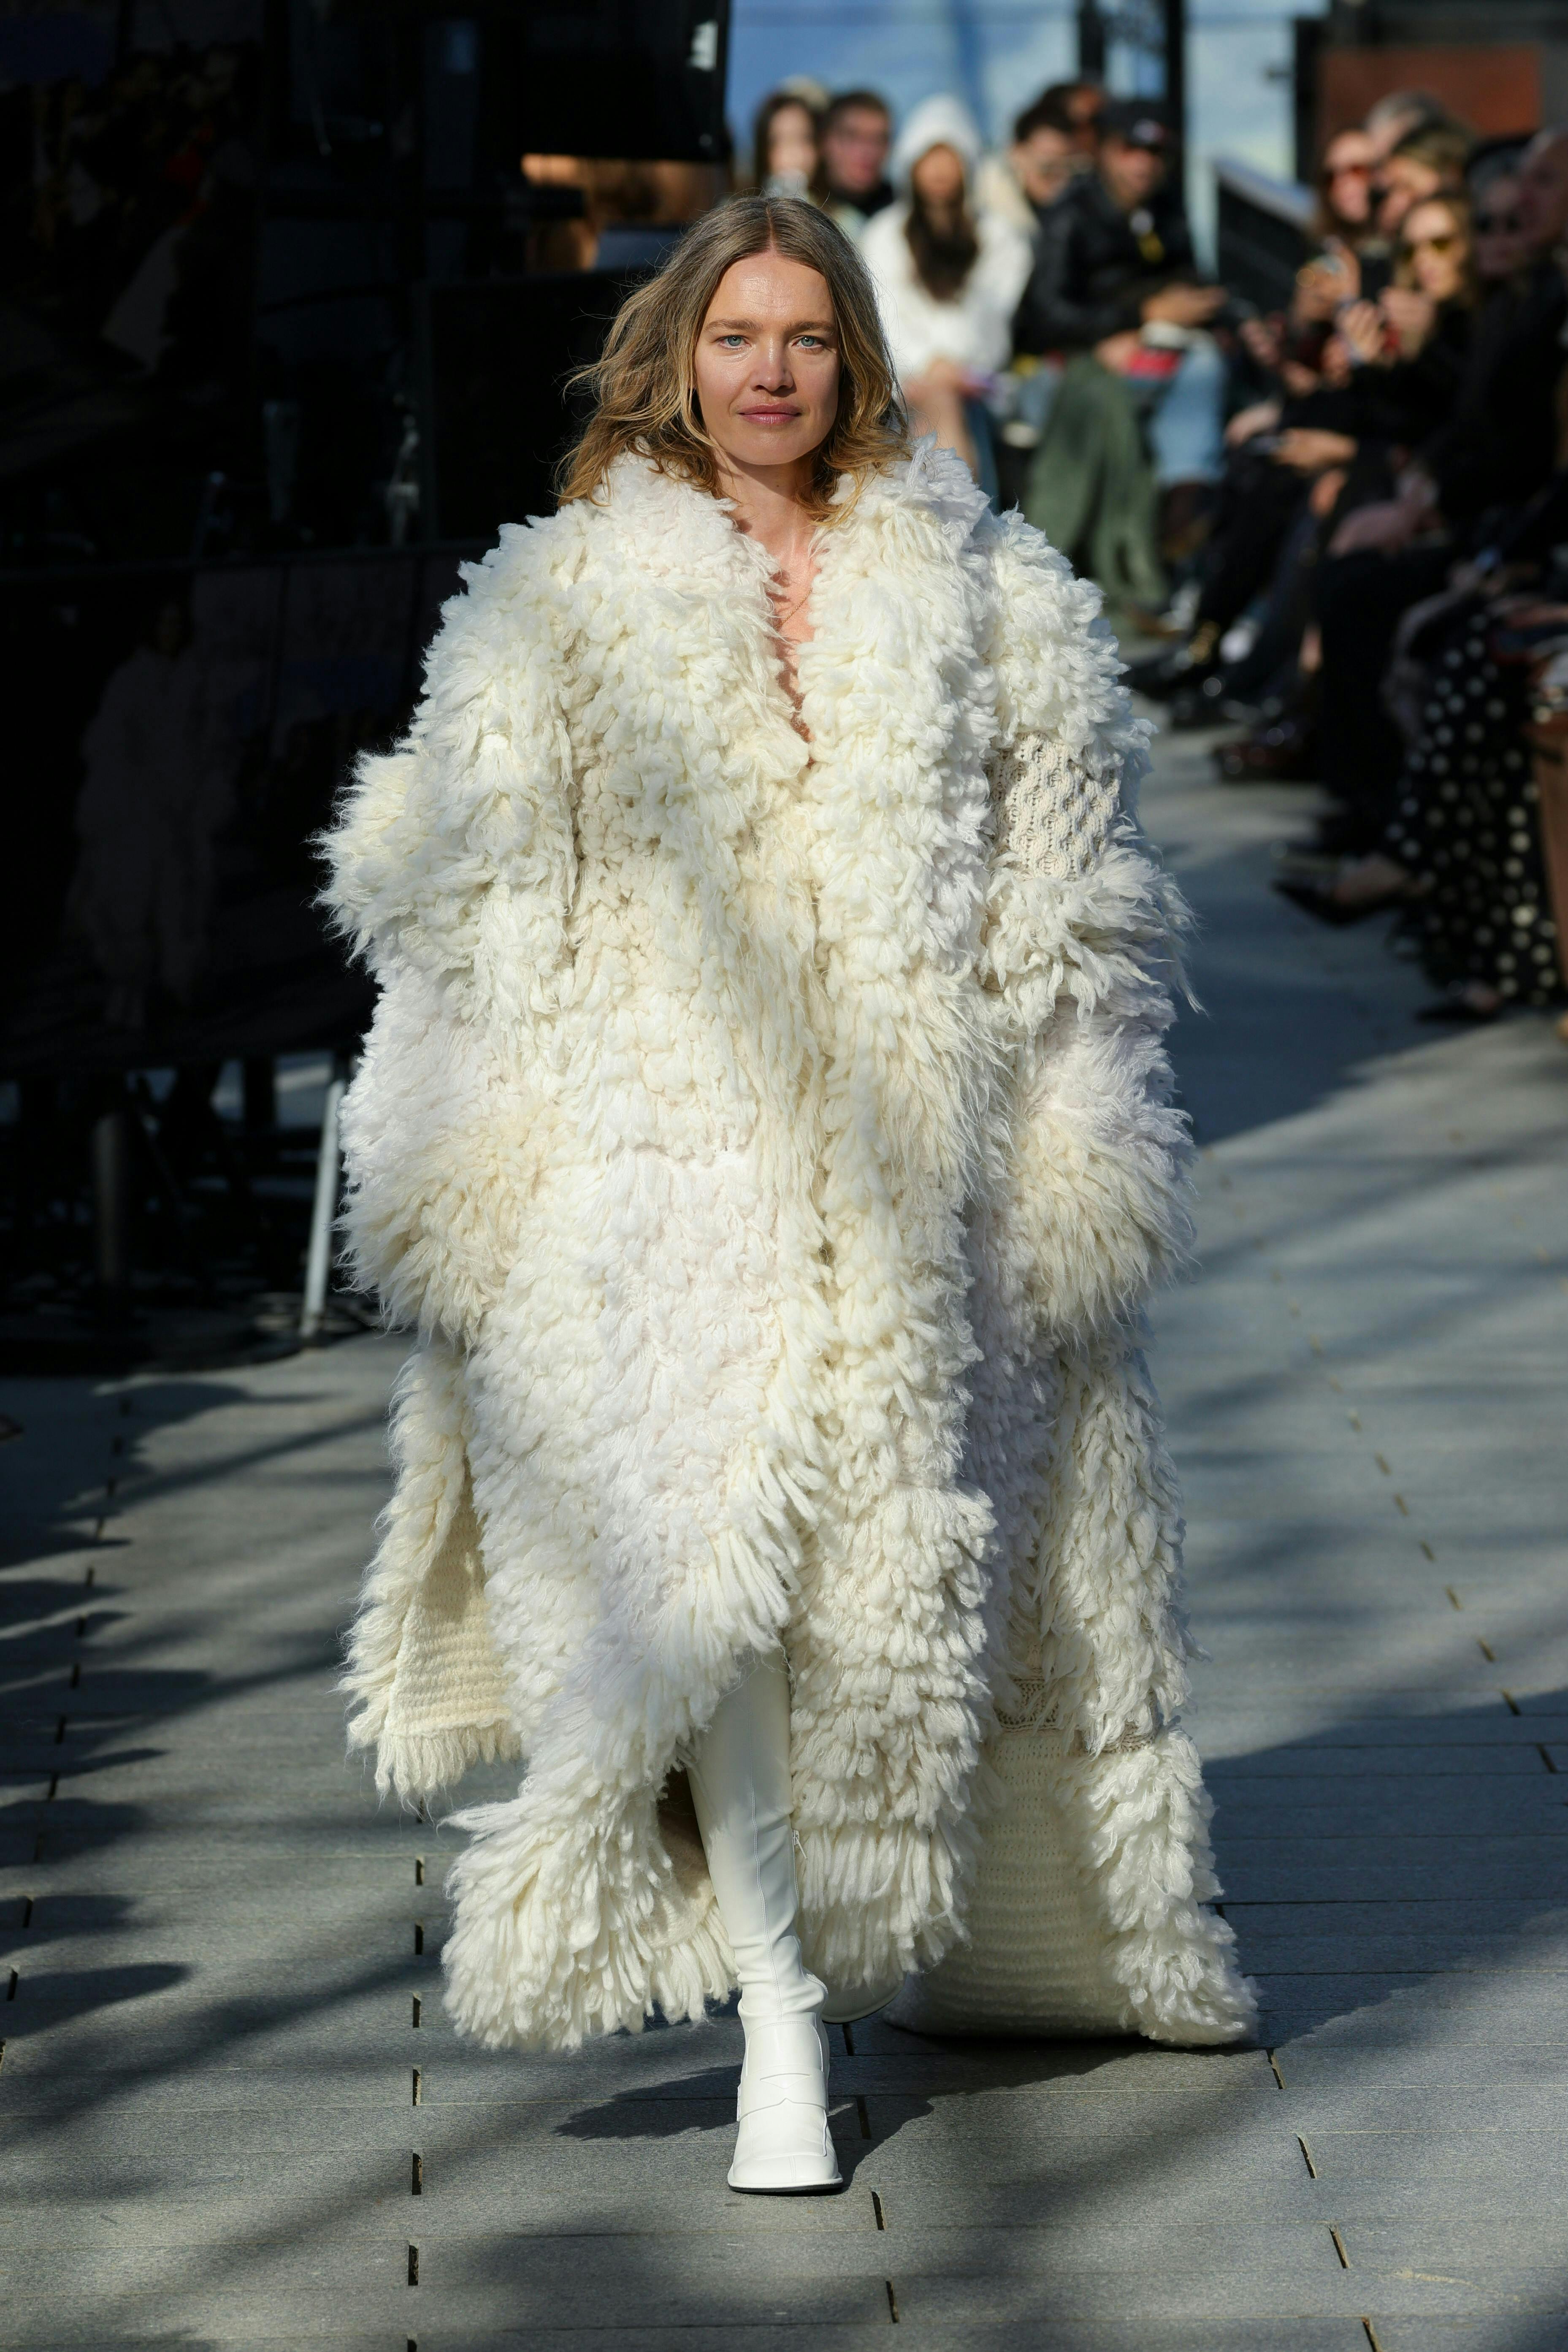 paris fashion clothing coat fur adult female person woman face lady